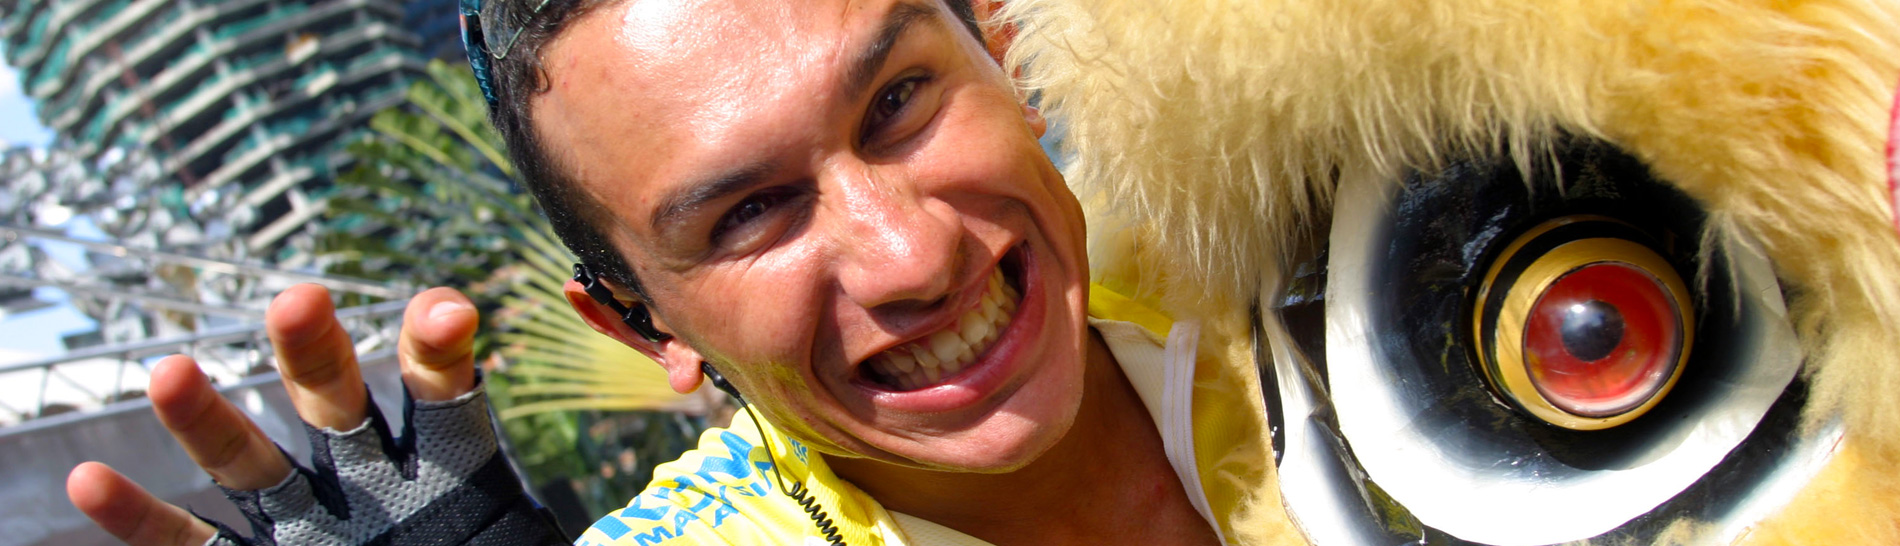 Le Tour de Langkawi: close up image of rider